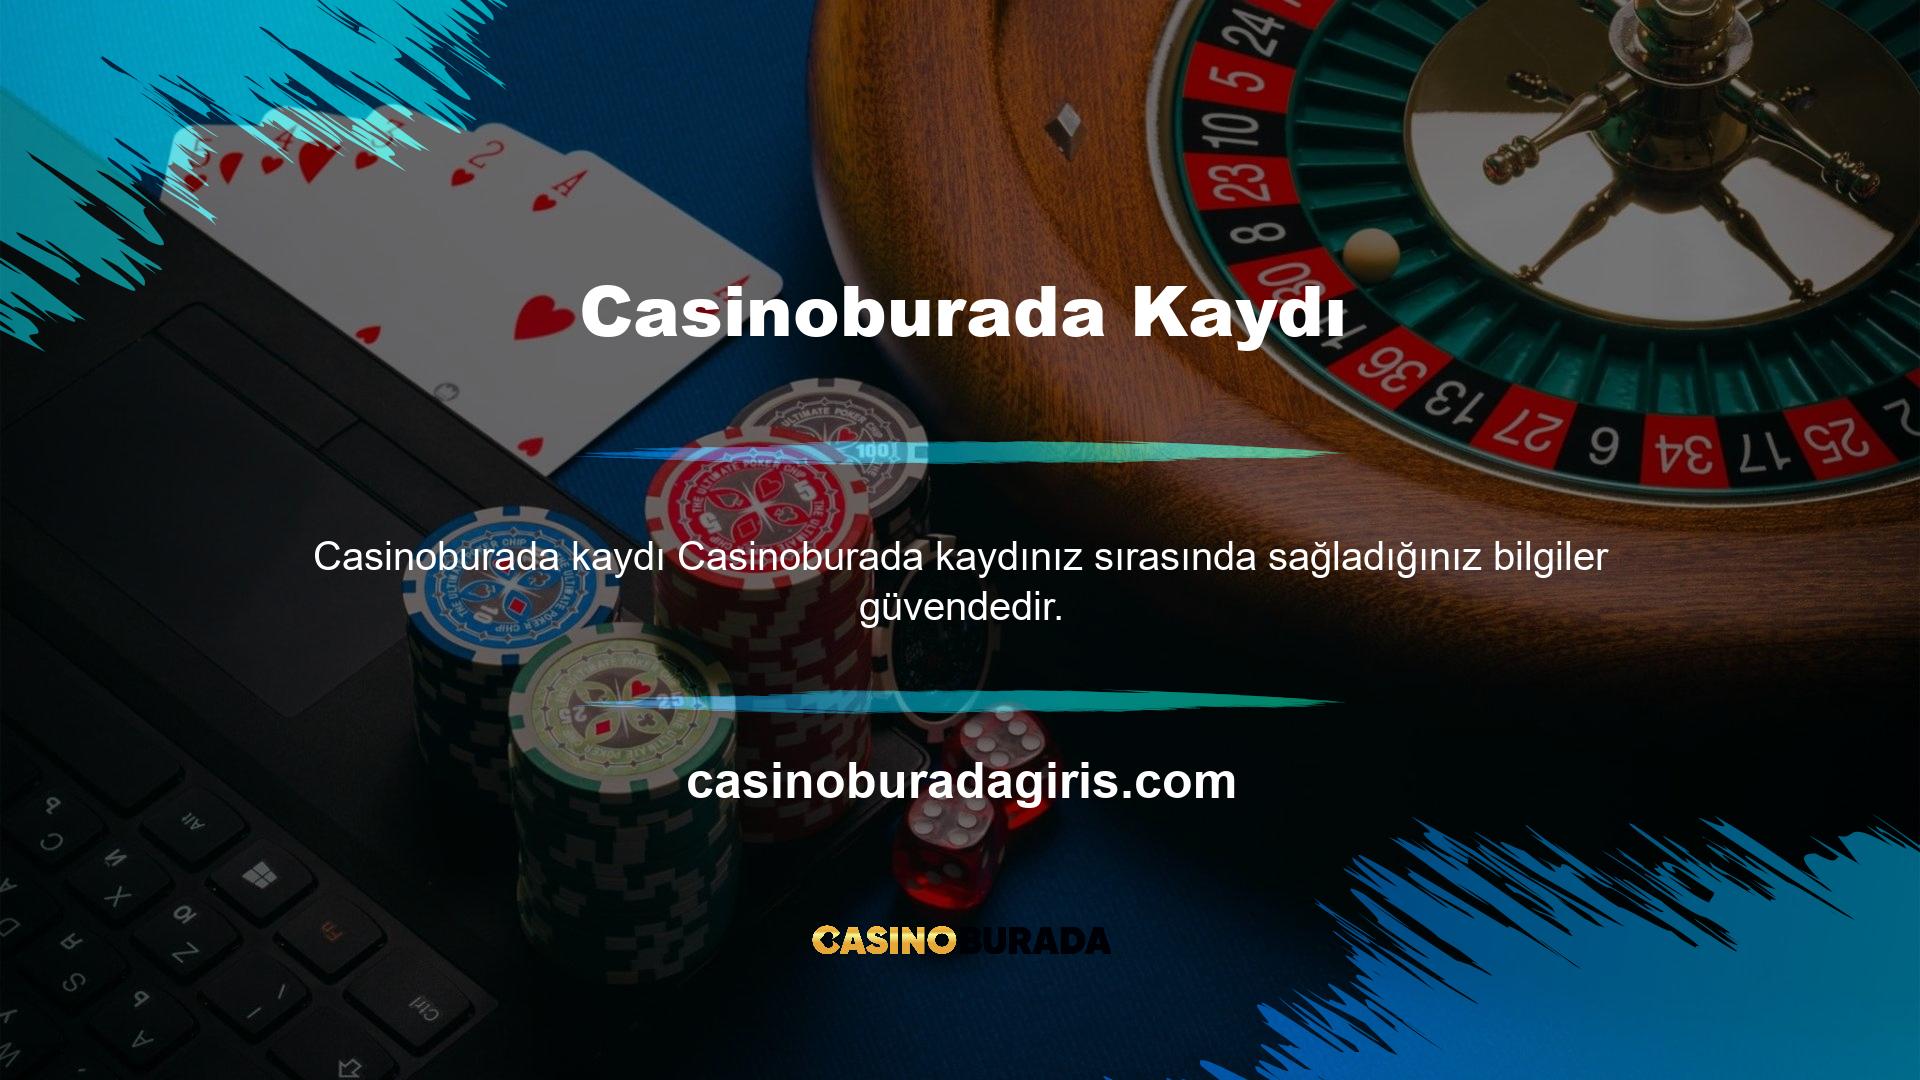 Casinoburada üyelik bilgilerimi paylaşmak güvenli midir? Gizlilik Politikamız ve gizlilik politikalarımıza uygun siteler hakkında detaylı bilgi